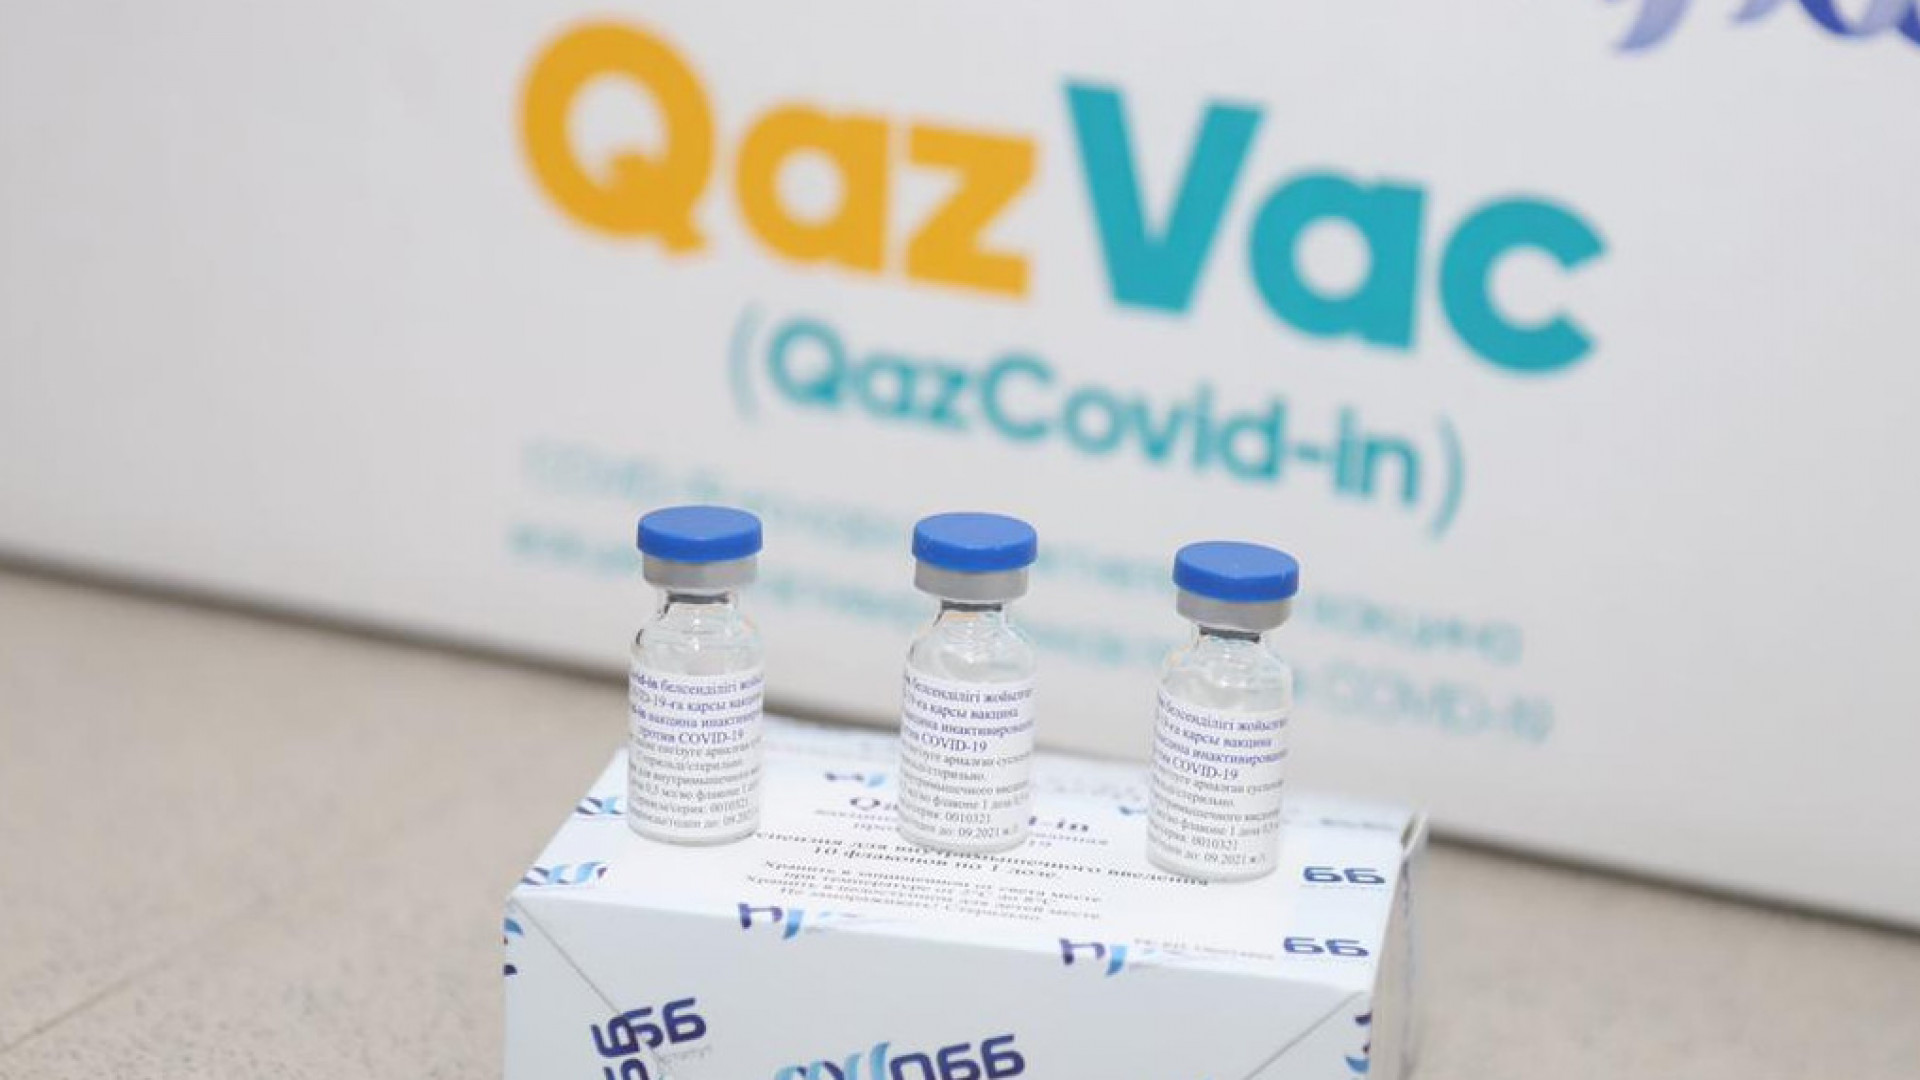 Qazvac вакцинасын әзірлеген ғалымдарға мемлекеттік сыйлық берілмек